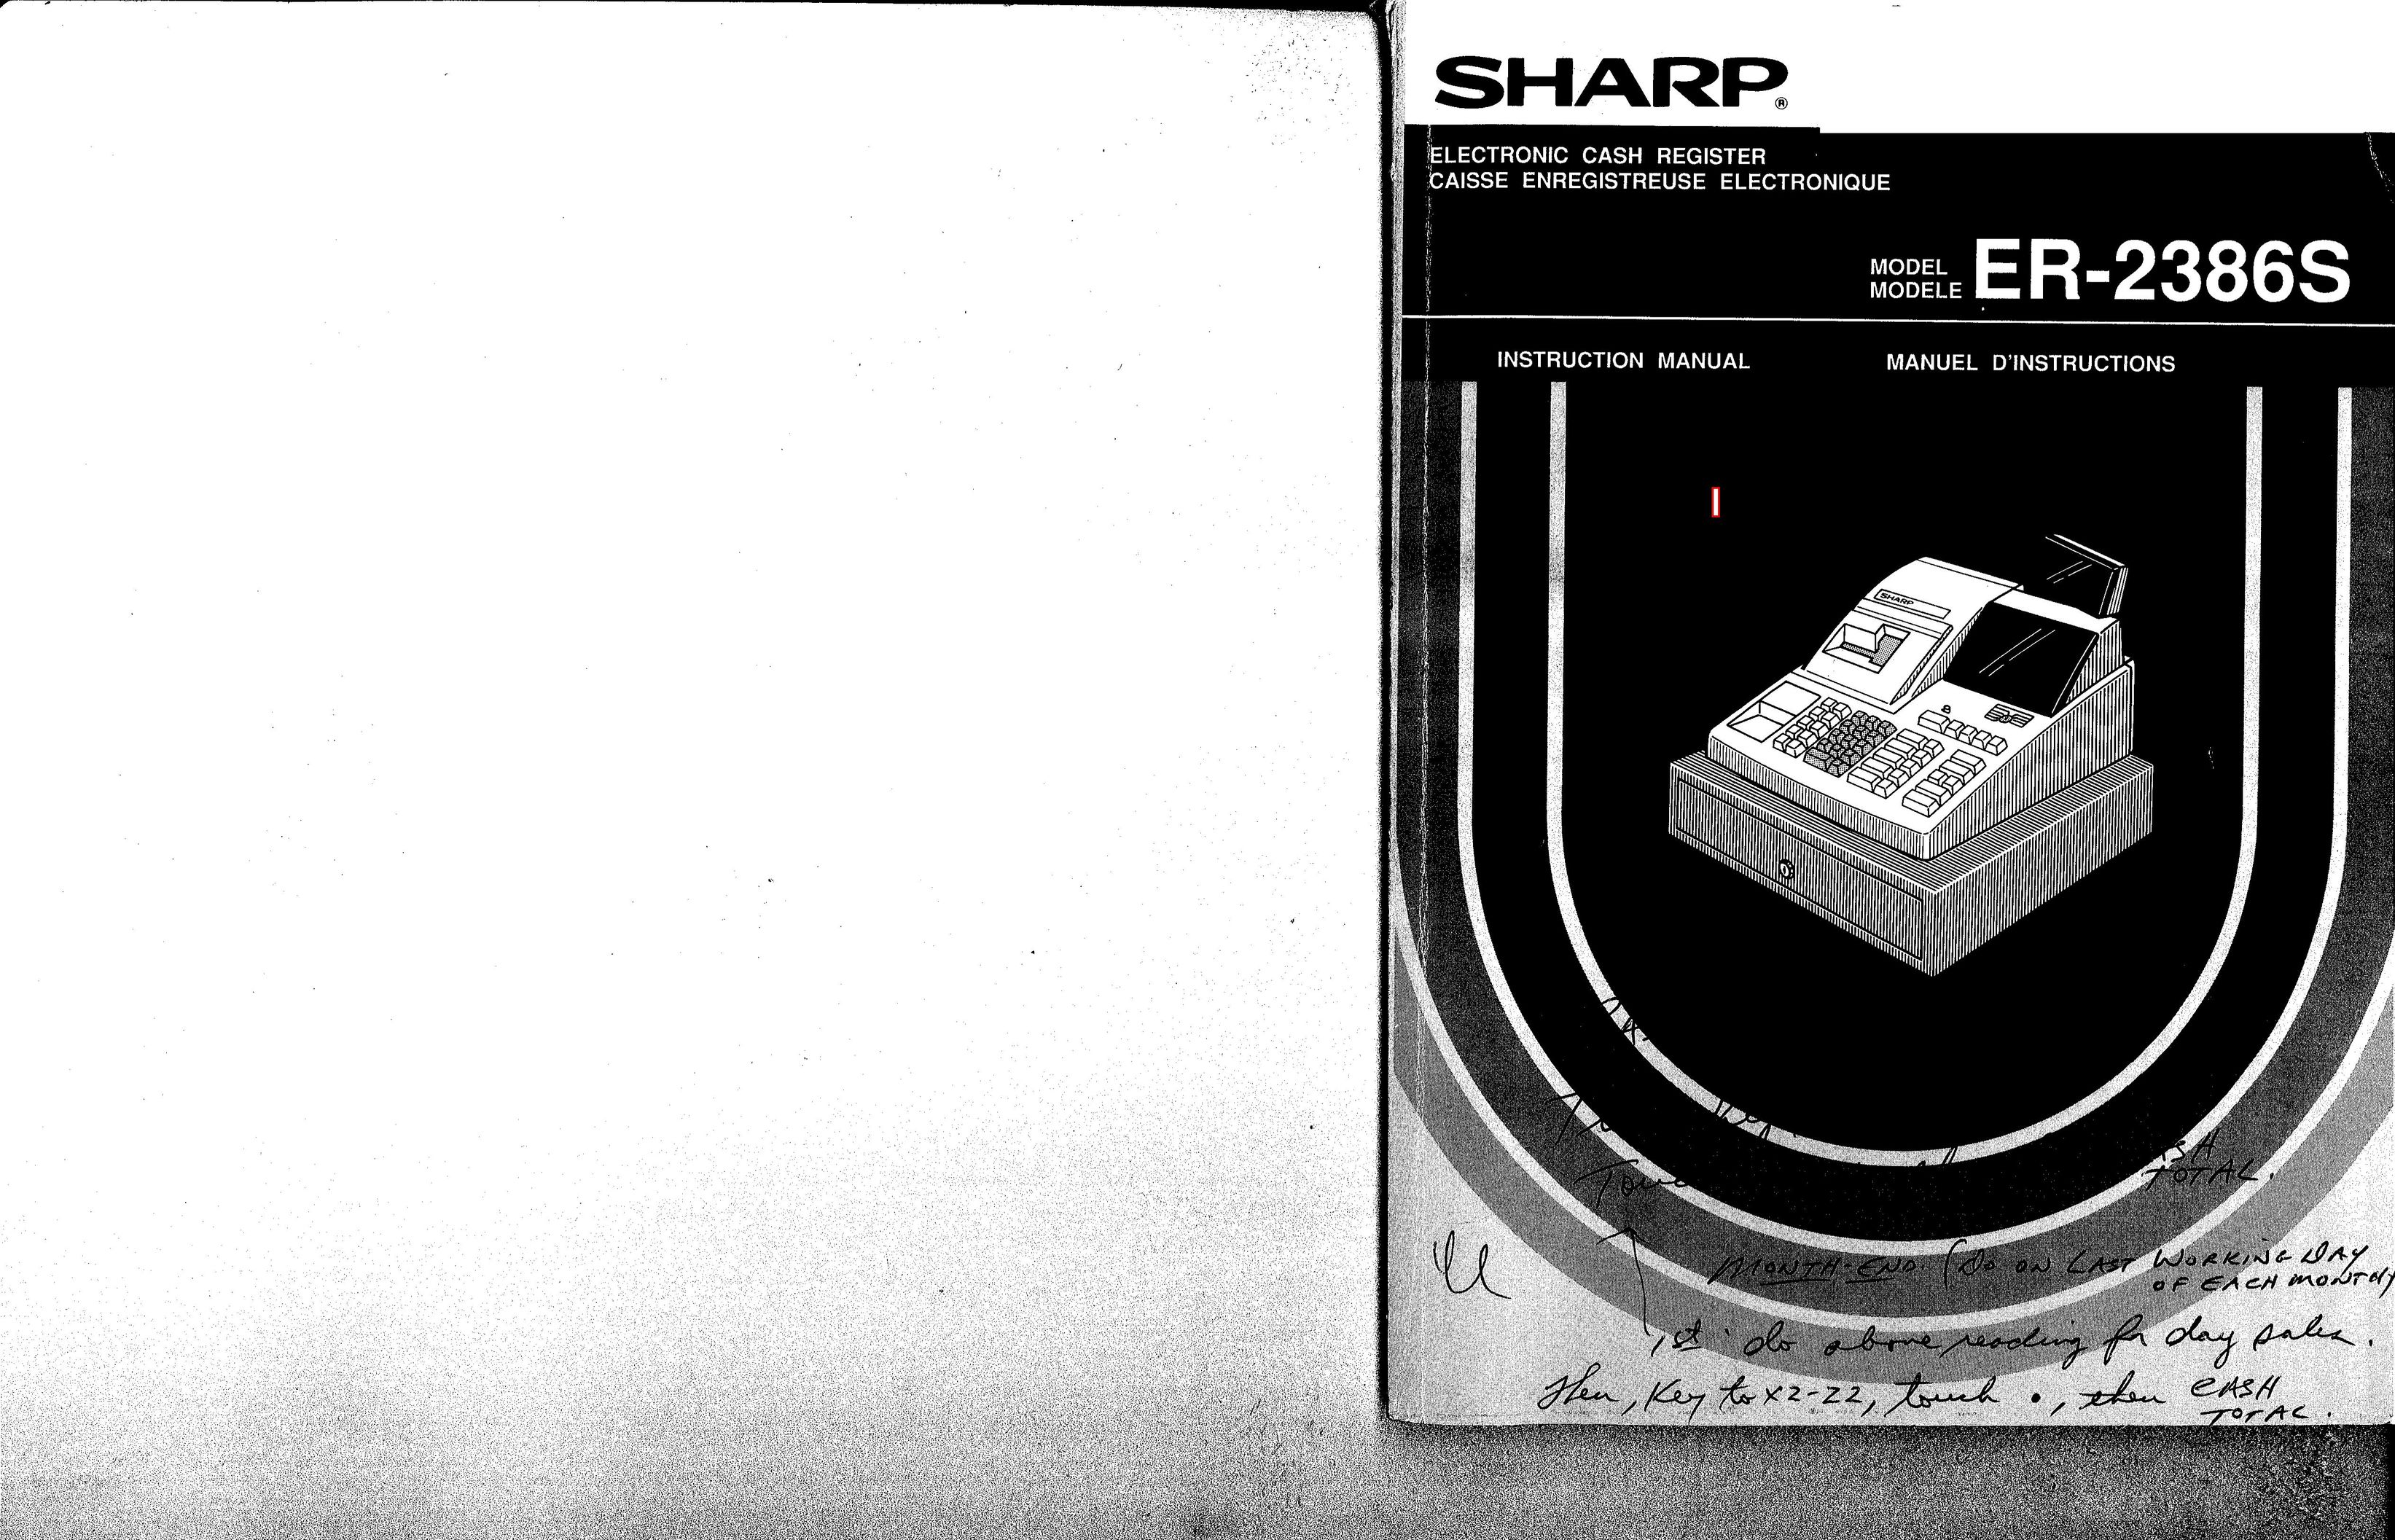 Sharp ER-2386S Cash Register User Manual